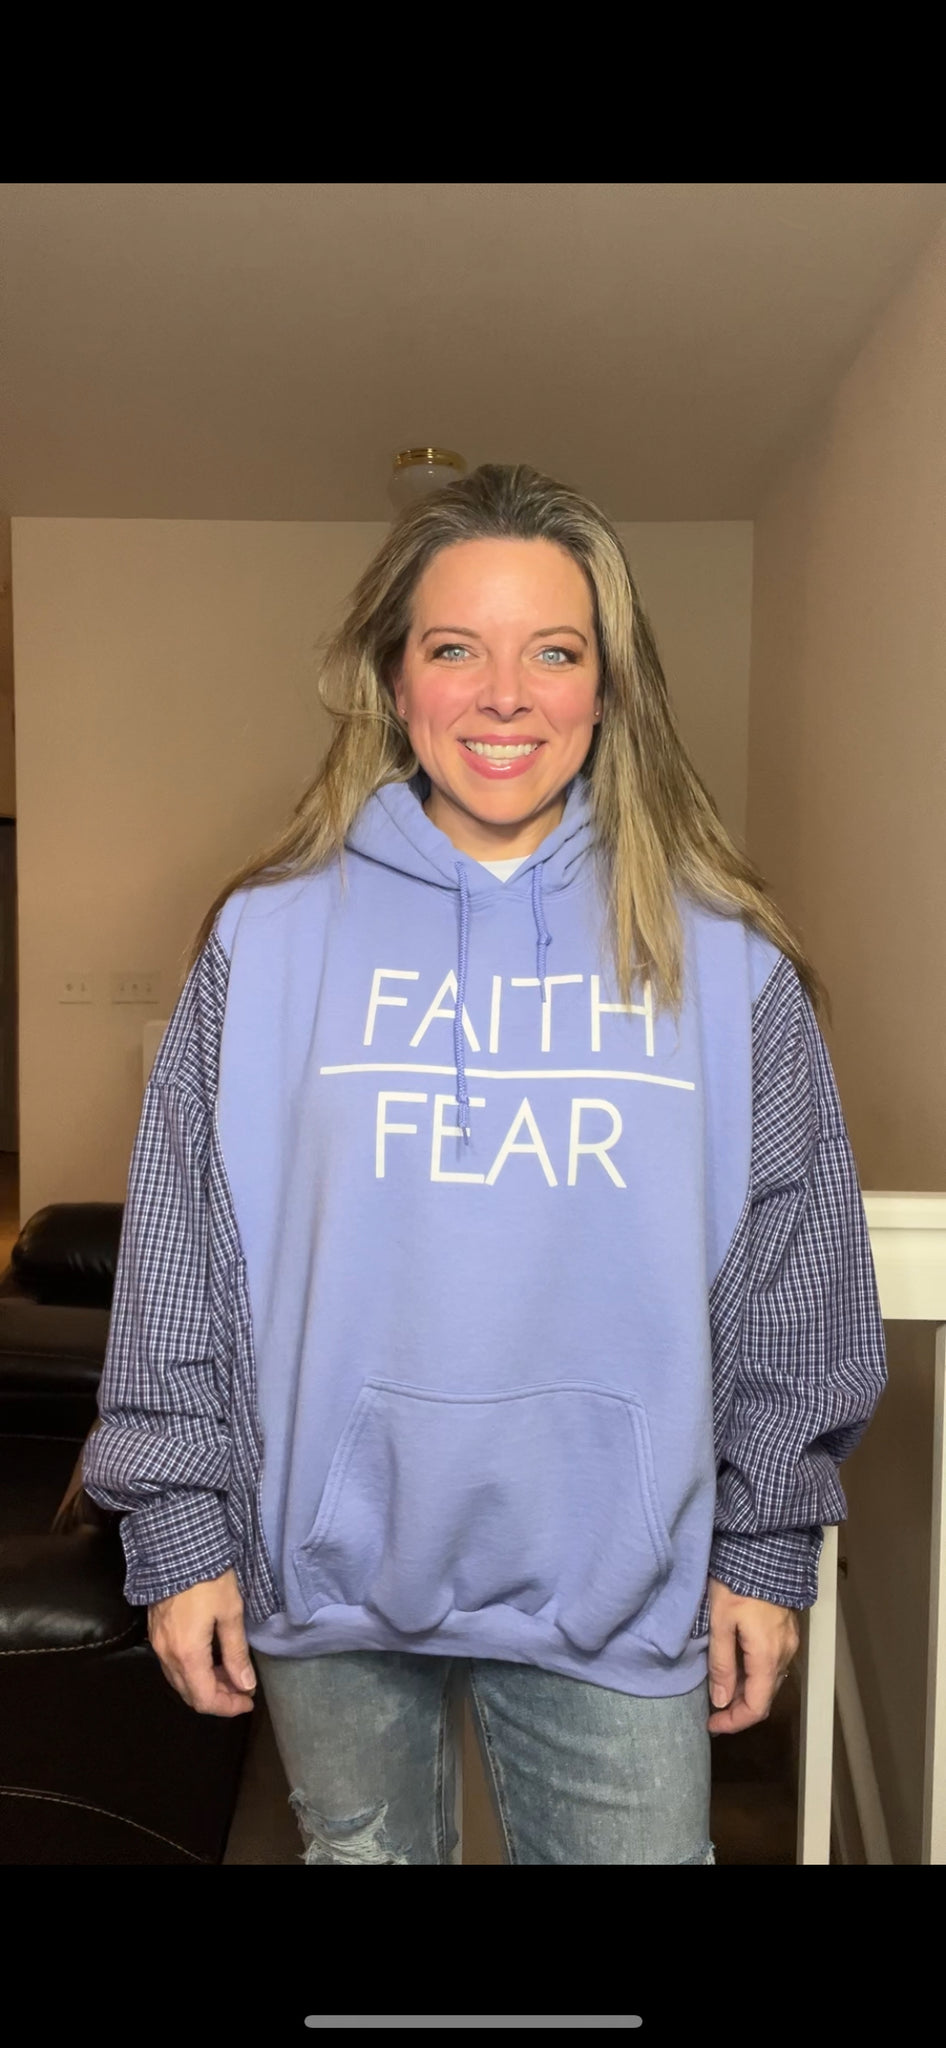 Faith Over Fear - woman’s XL